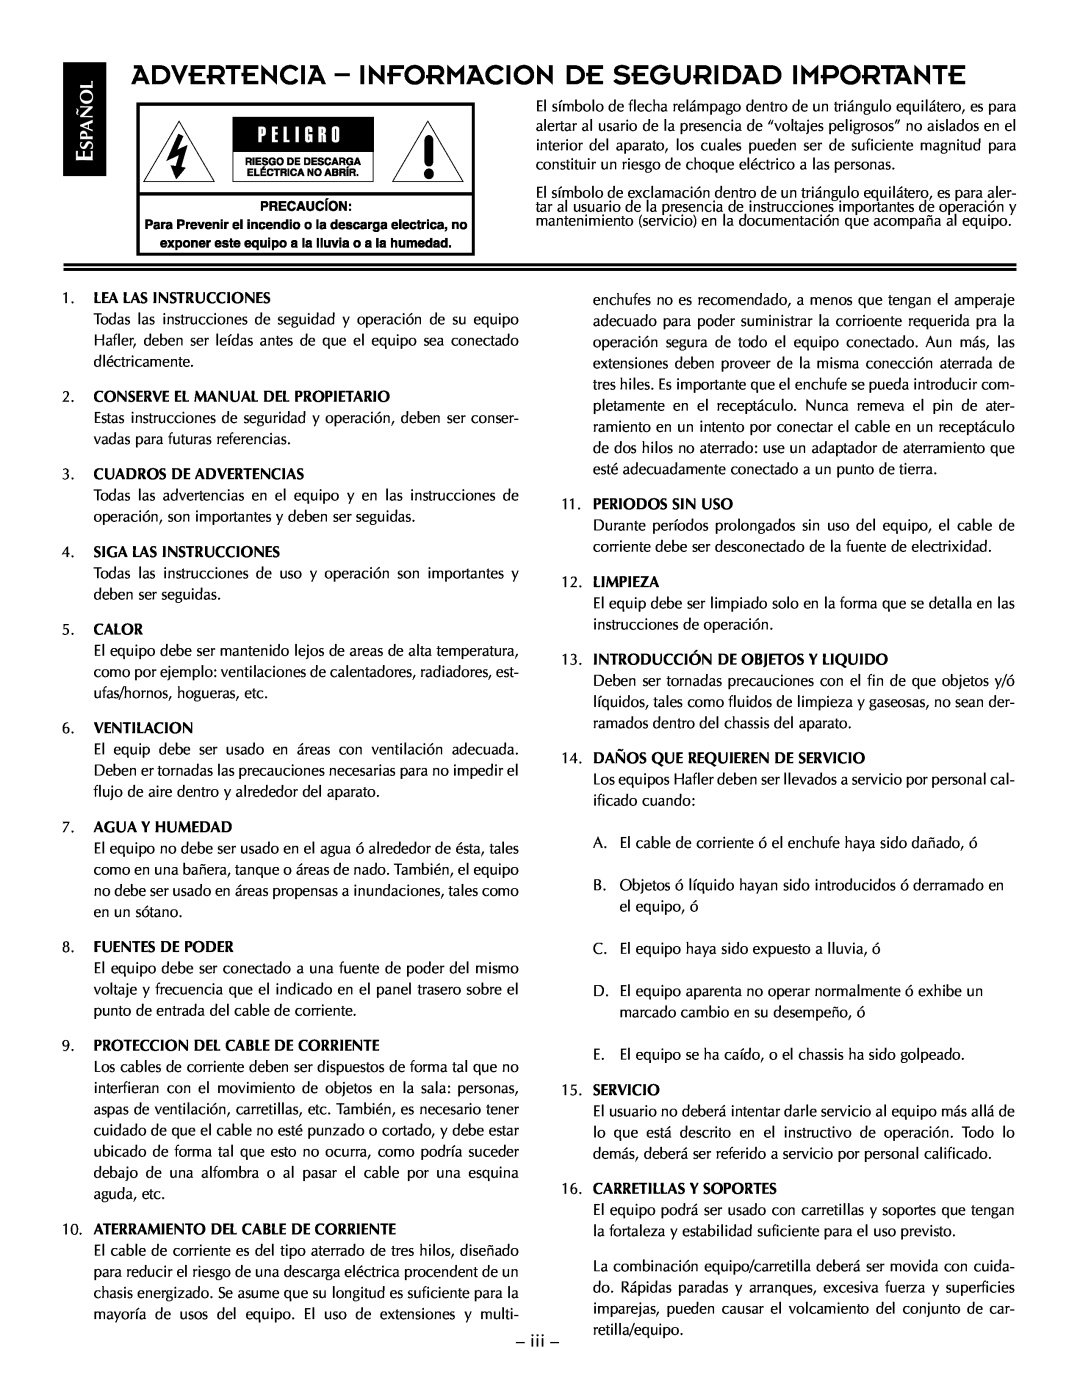 Hafler TRM6.1CE manual Advertencia - Informacion De Seguridad Importante, Español 